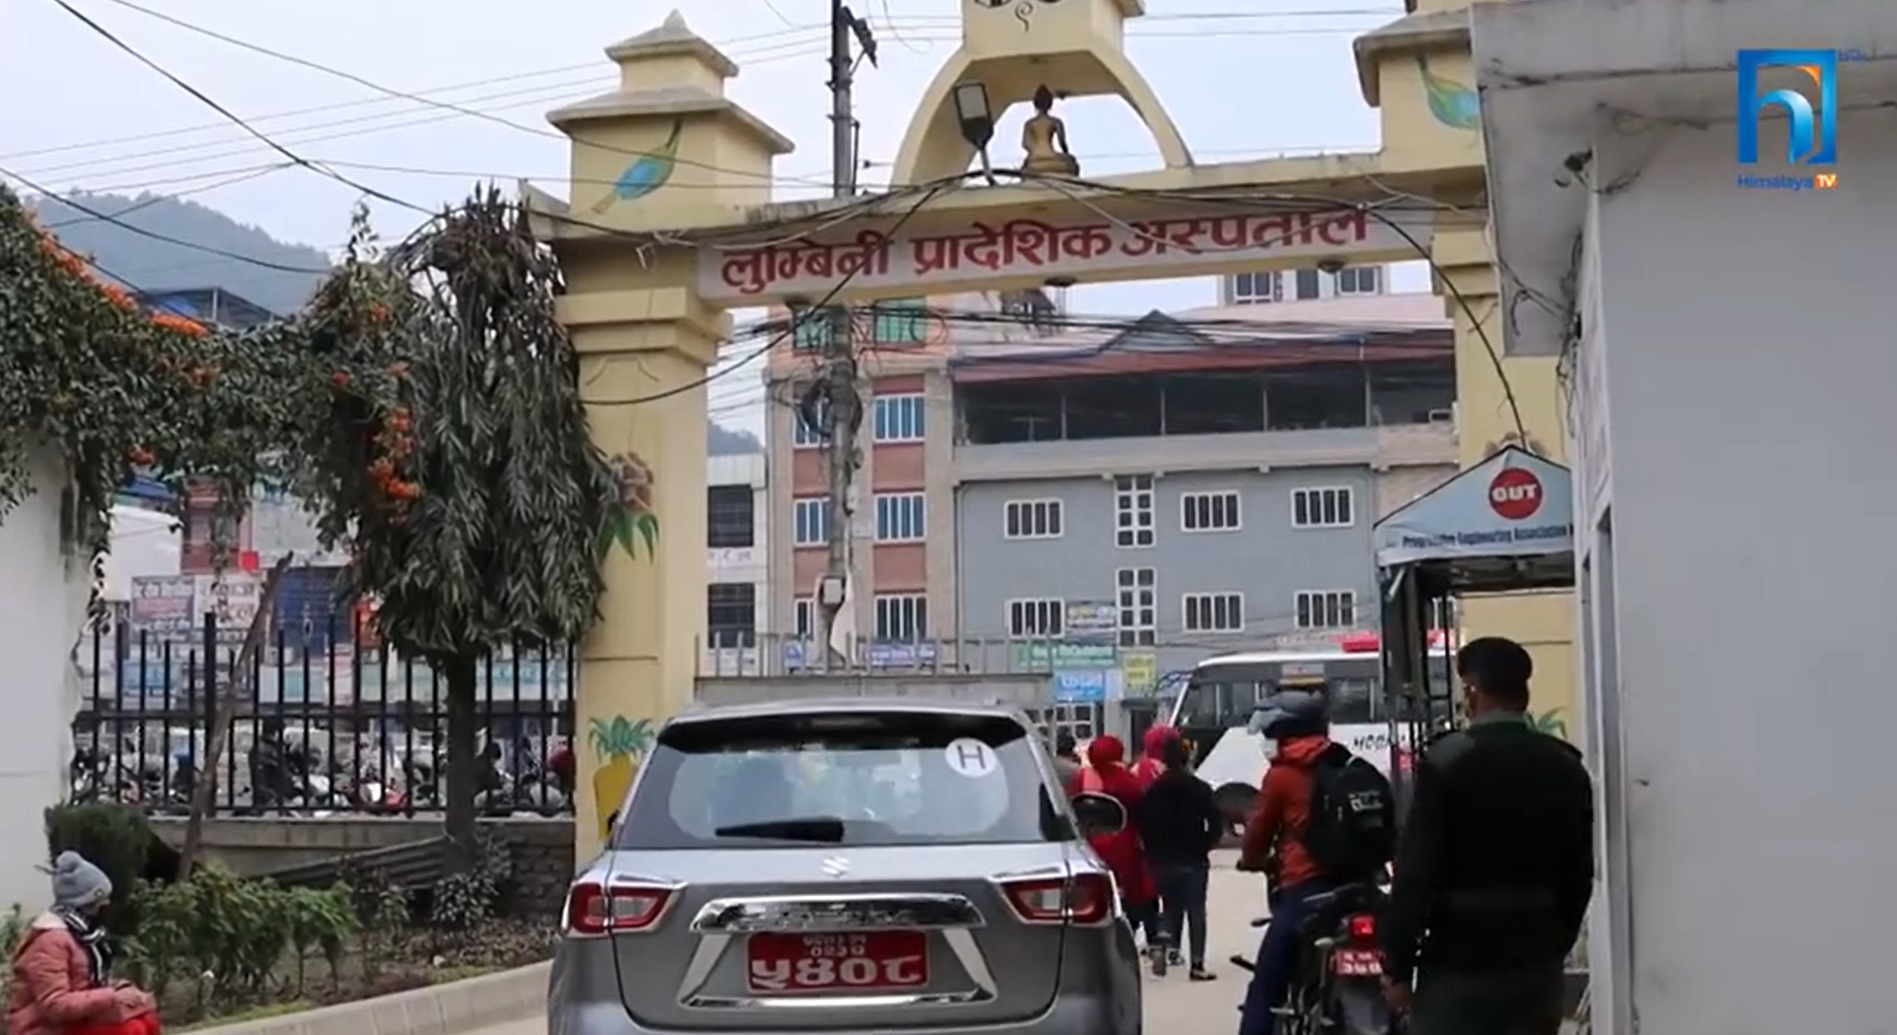 कोरोनाको तेस्रो लहर : लुम्बिनीका १४ अस्पताल नेतृत्वविहीन (भिडियो रिपोर्टसहित)